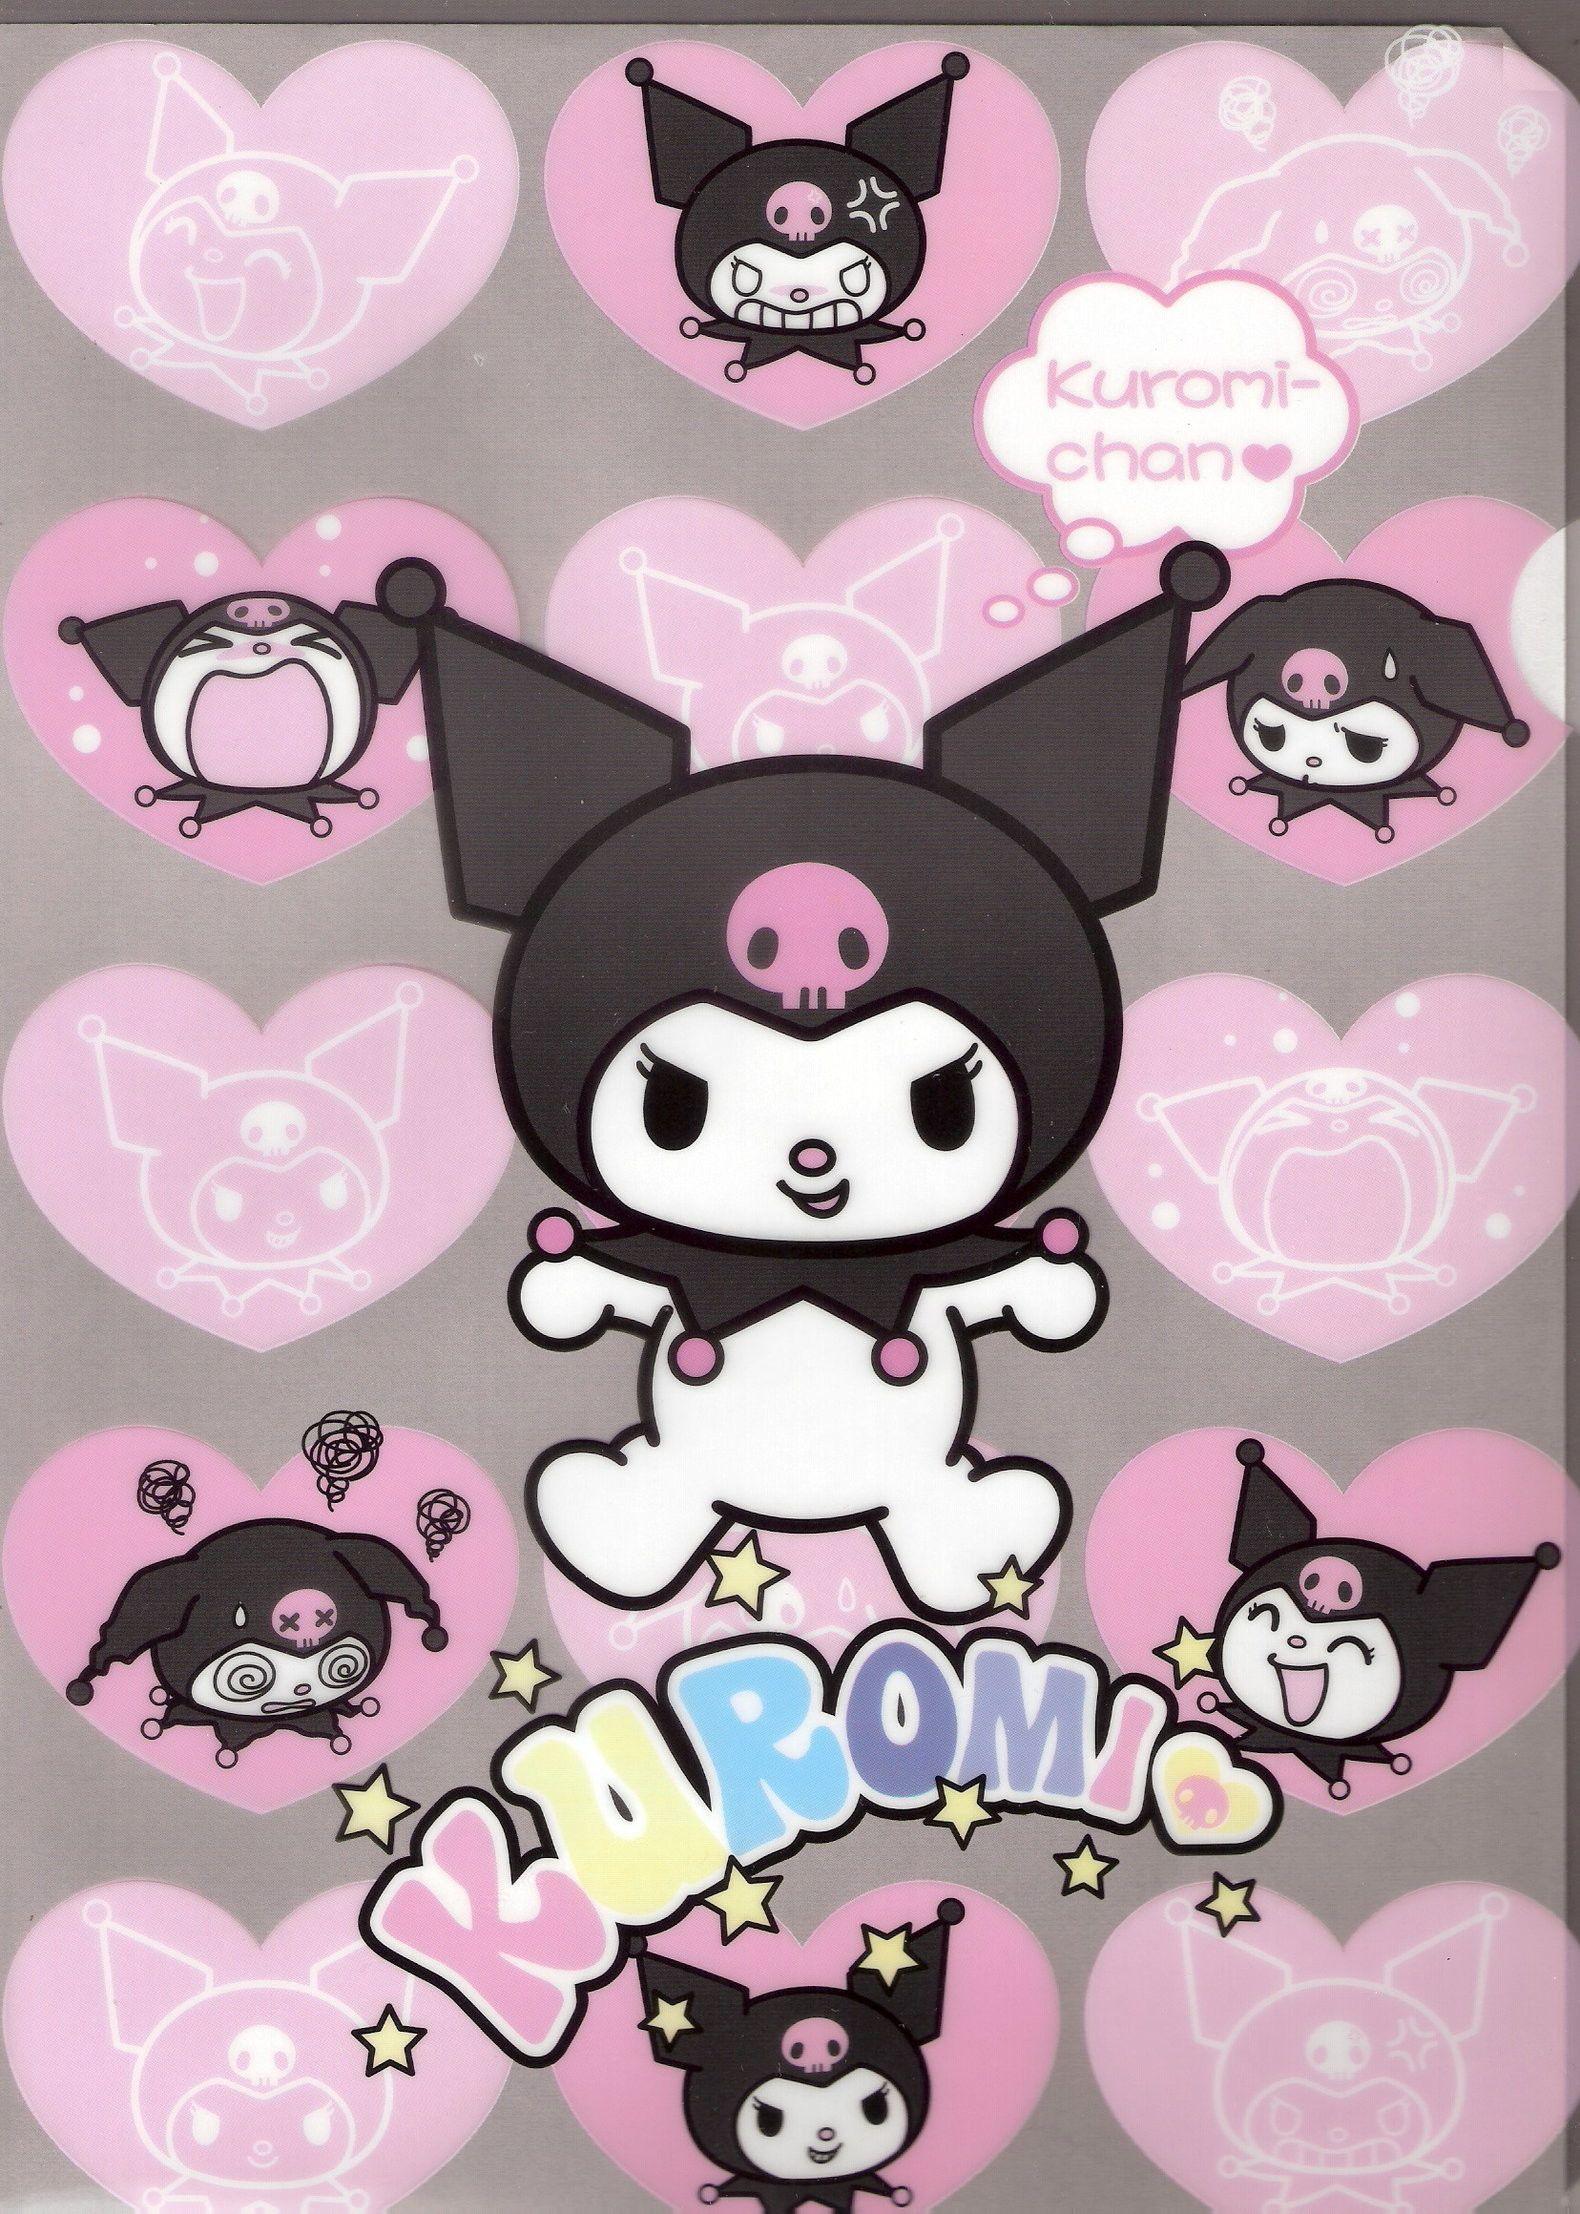 Hãy thưởng thức hình nền Kuromi đáng yêu này với khả năng trở nên vô cùng thú vị cho điện thoại của bạn. Tận hưởng vẻ độc đáo và dễ thương của Kuromi bằng cách sử dụng bức ảnh này làm hình nền điện thoại của bạn.